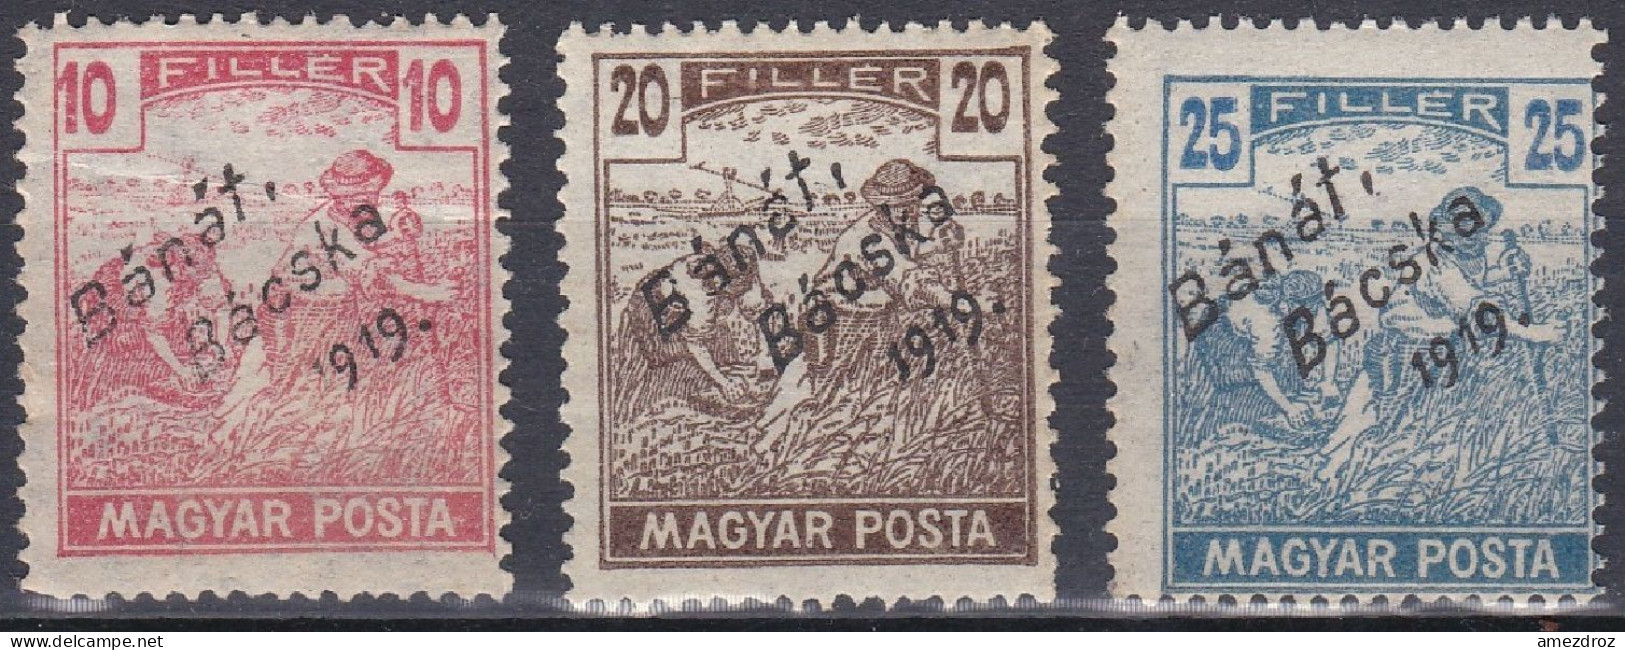 Hongrie Banat Bacska 1919 39-41 NMH ** Moissonneurs  (A9) - Banat-Bacska